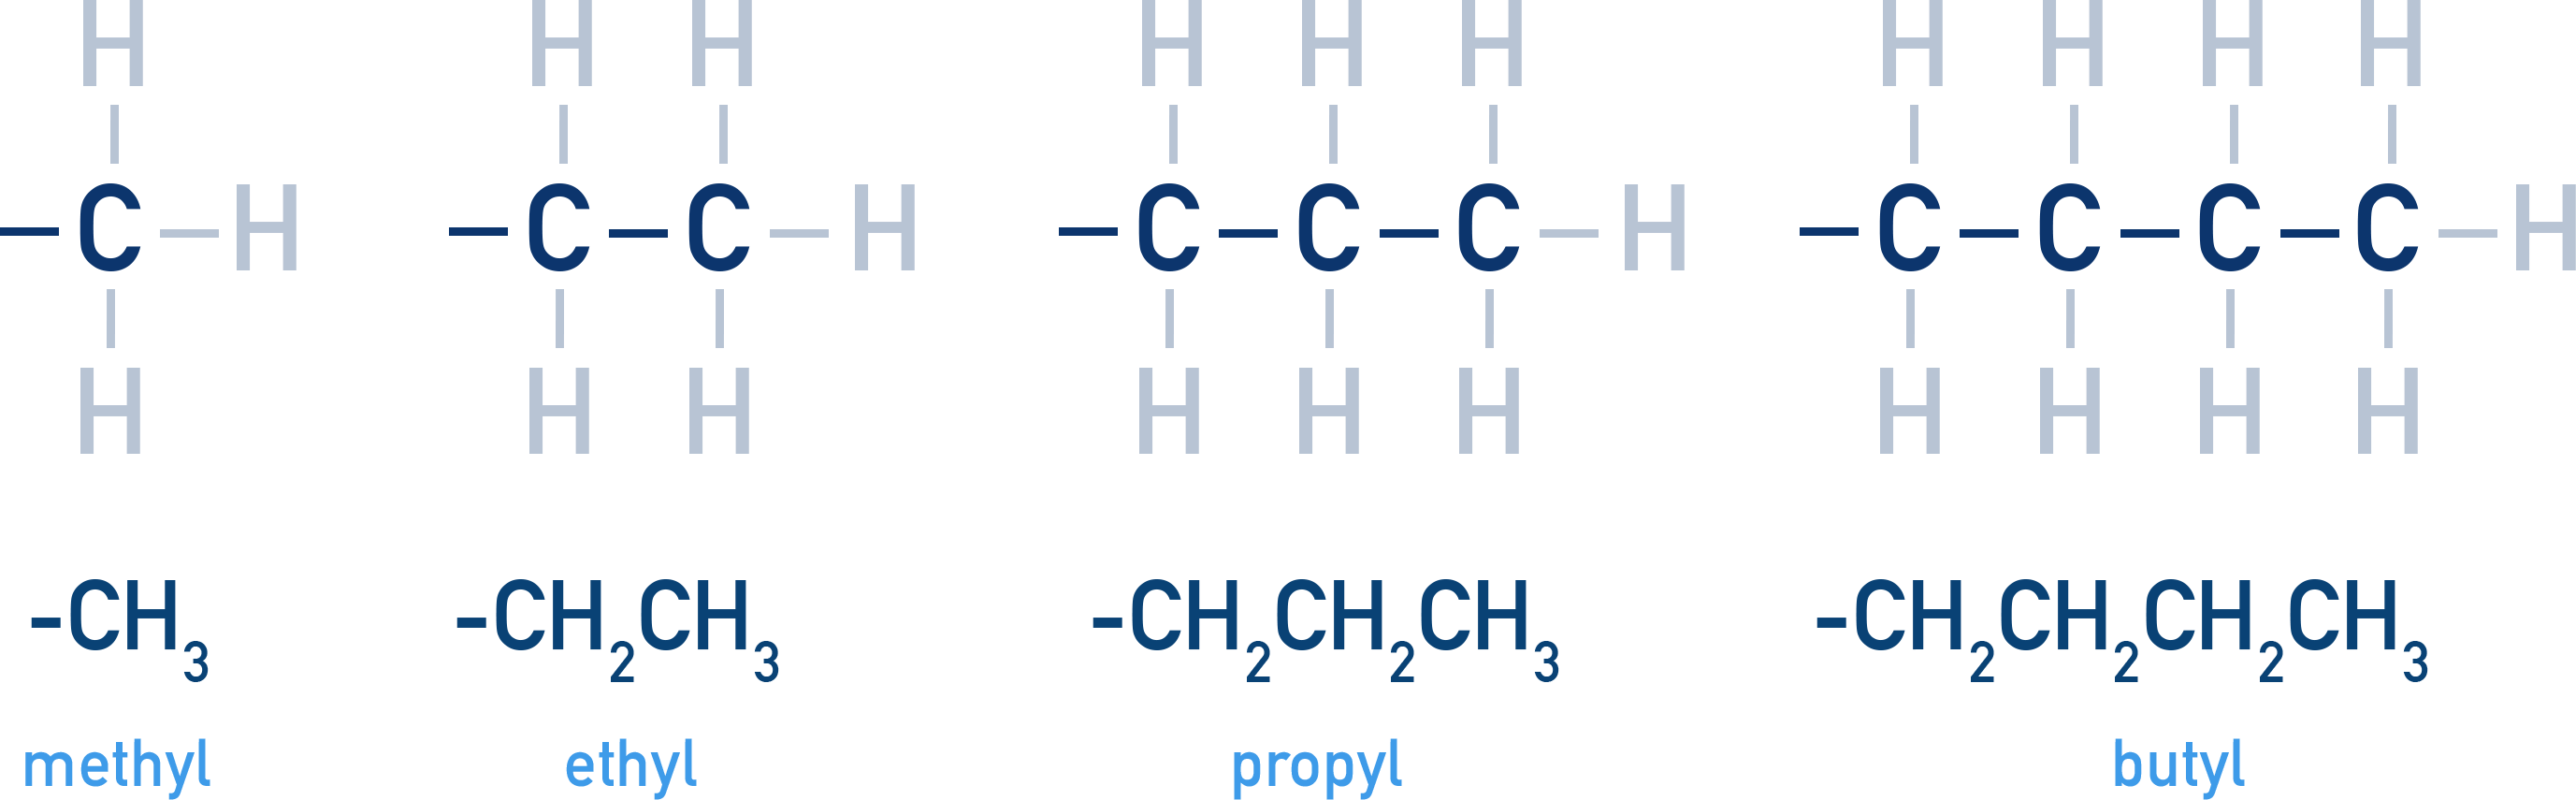 alkyl chains ethyl methyl propyl